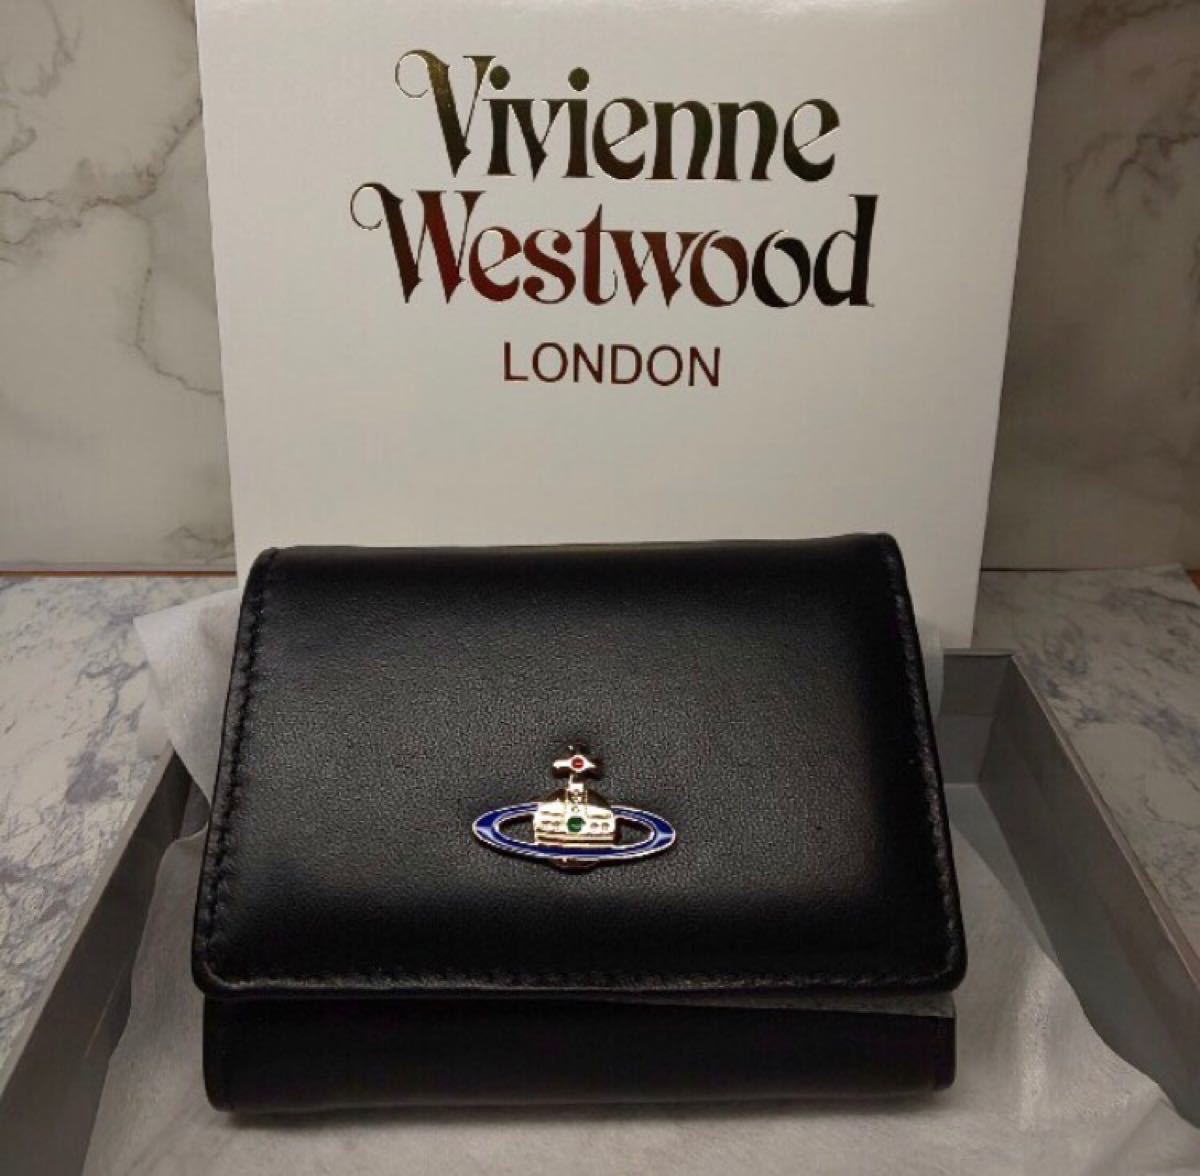 Vivienne Westwood 折り財布【ブルー】 小銭入れ 三つ折り財布 ヴィヴィアンウエストウッド